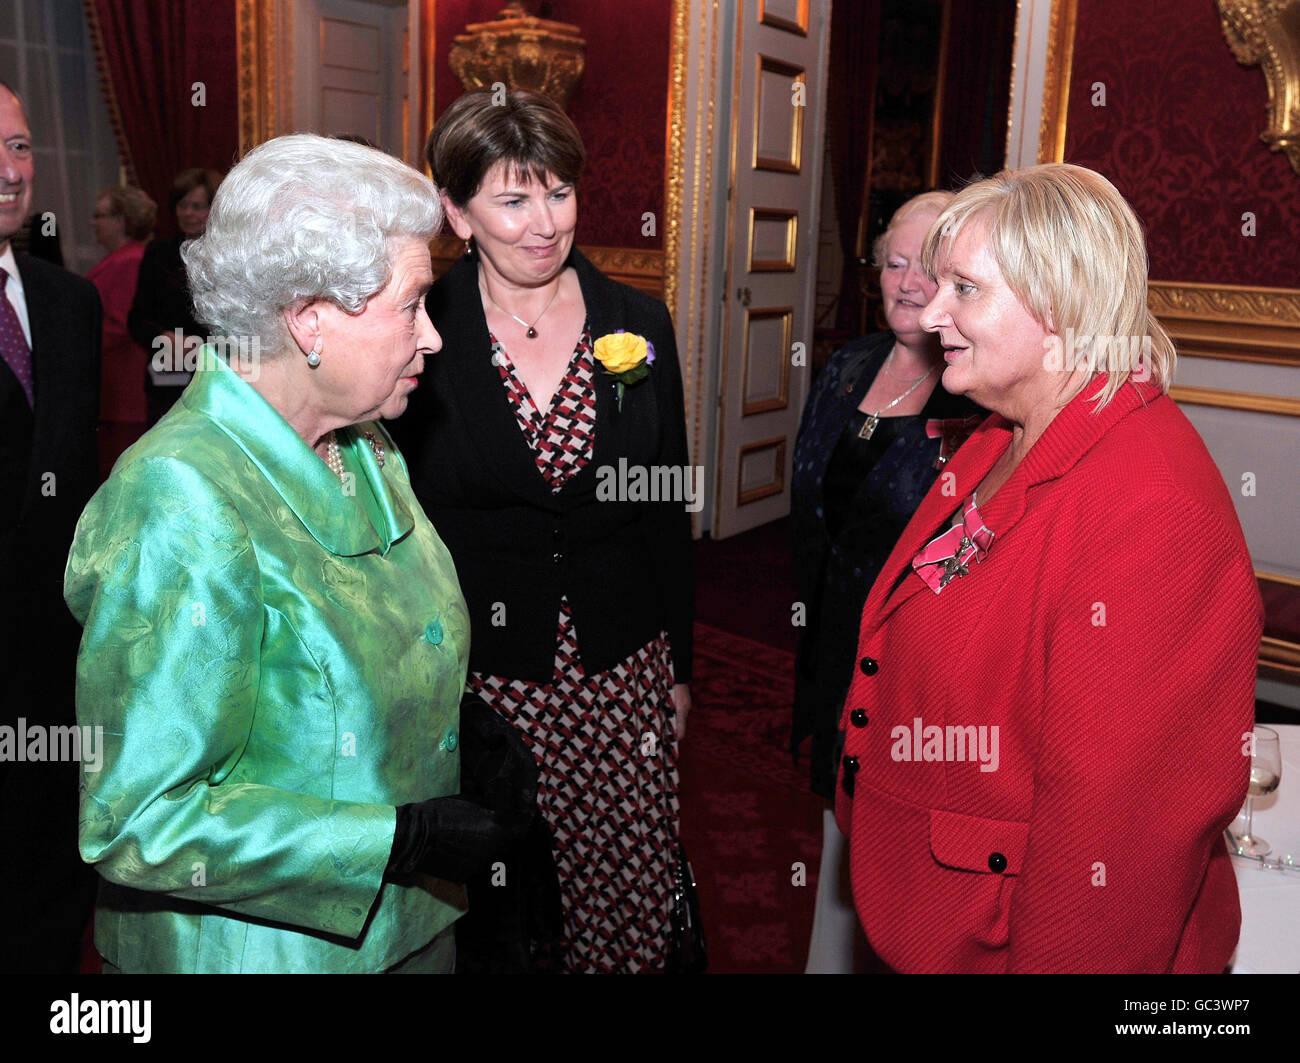 La reine Elizabeth II parle avec Mary O'Neil MBE, de Dungannon en Irlande du Nord, lors d'une réception pour souligner le 50e anniversaire de l'organisme national de bienfaisance de deuil Cruse, au Palais Saint-James, ce soir. Banque D'Images